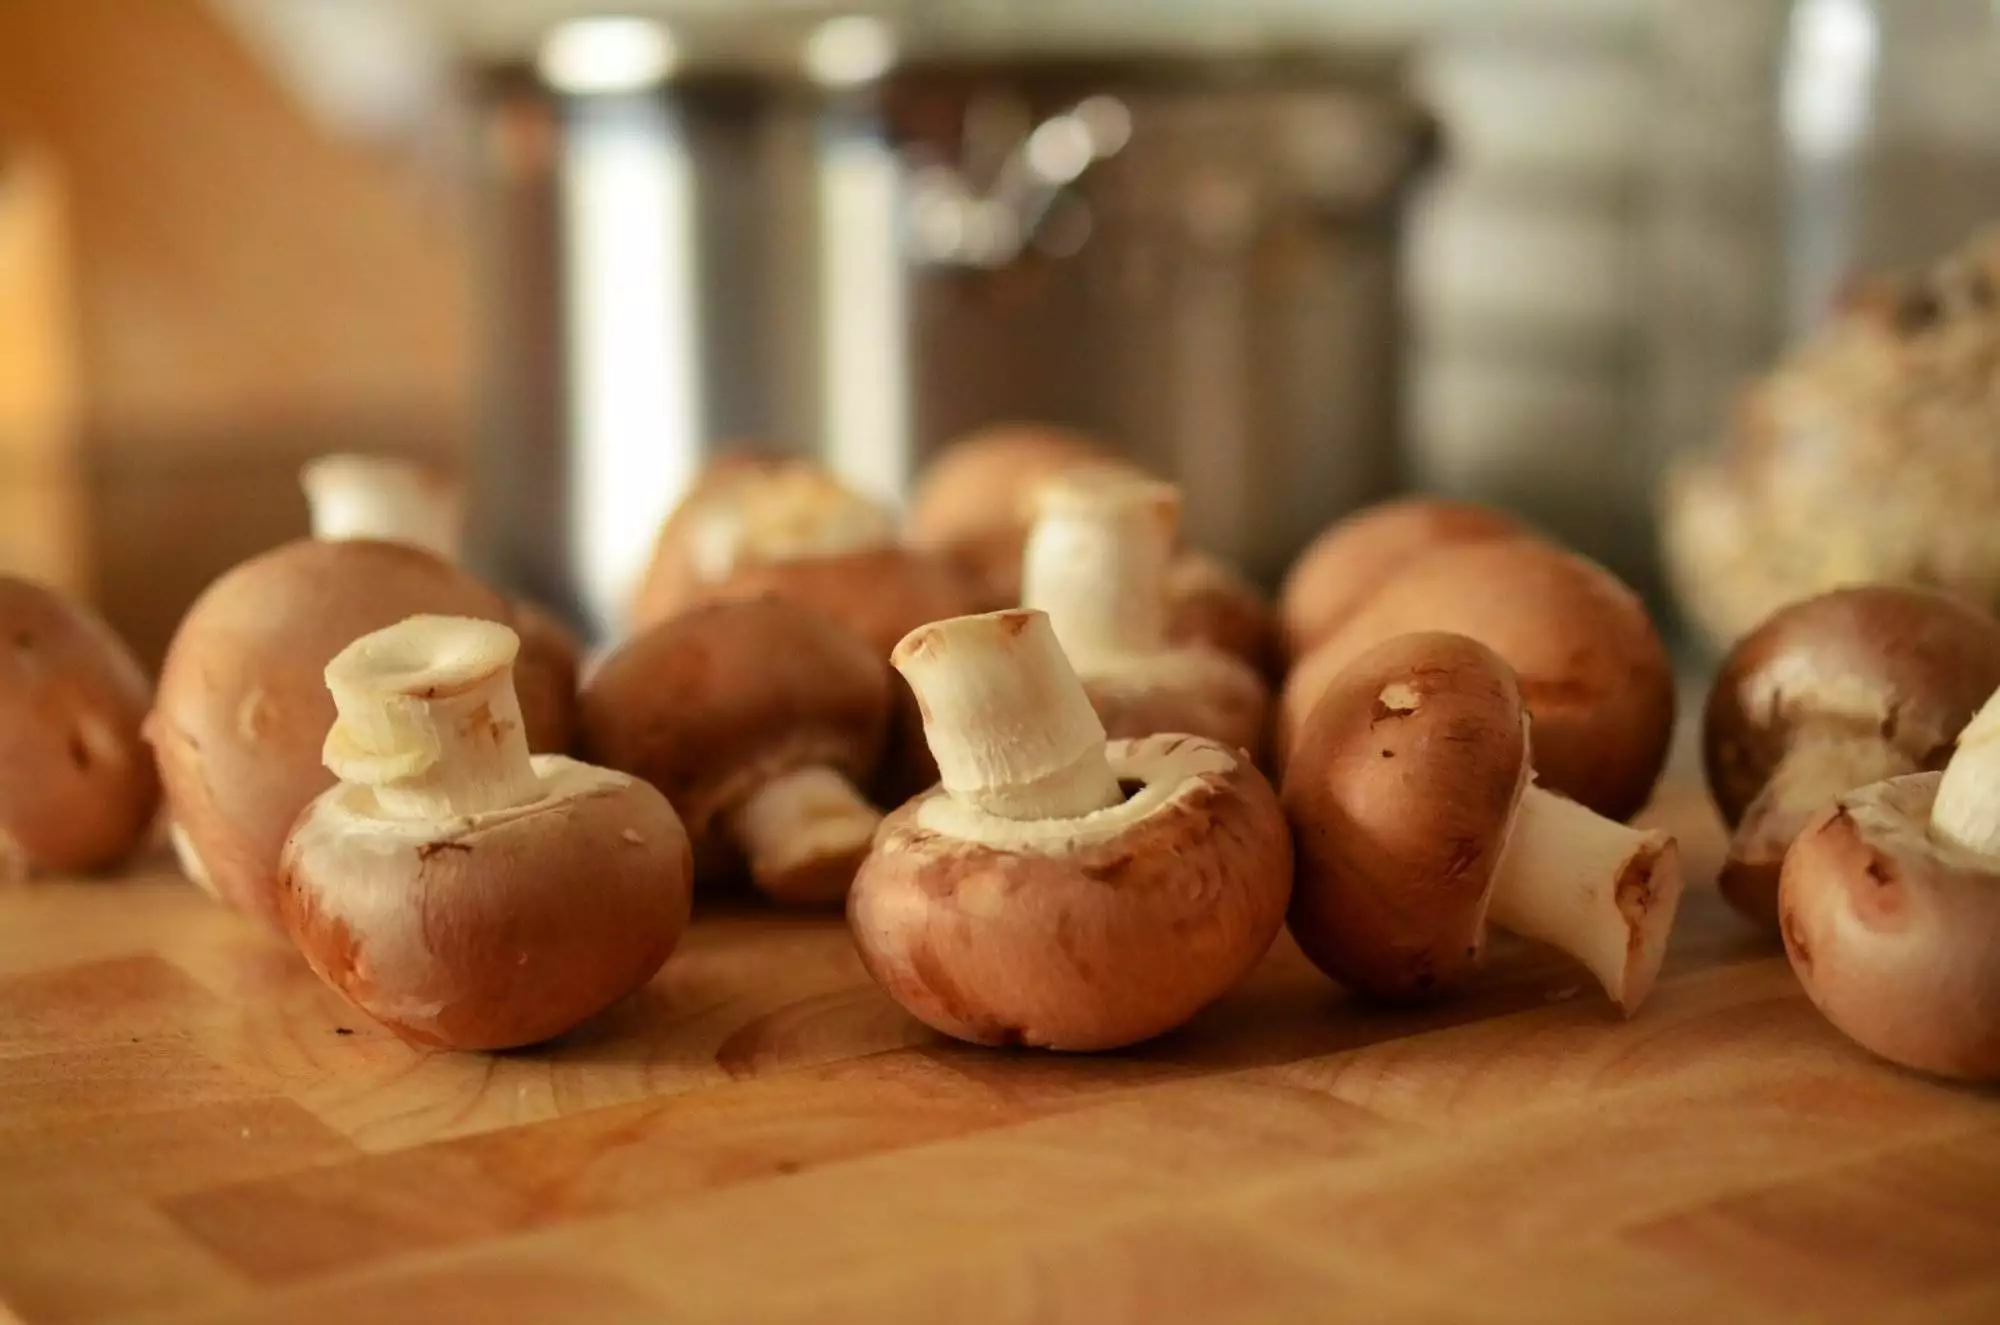 how do mushrooms grow